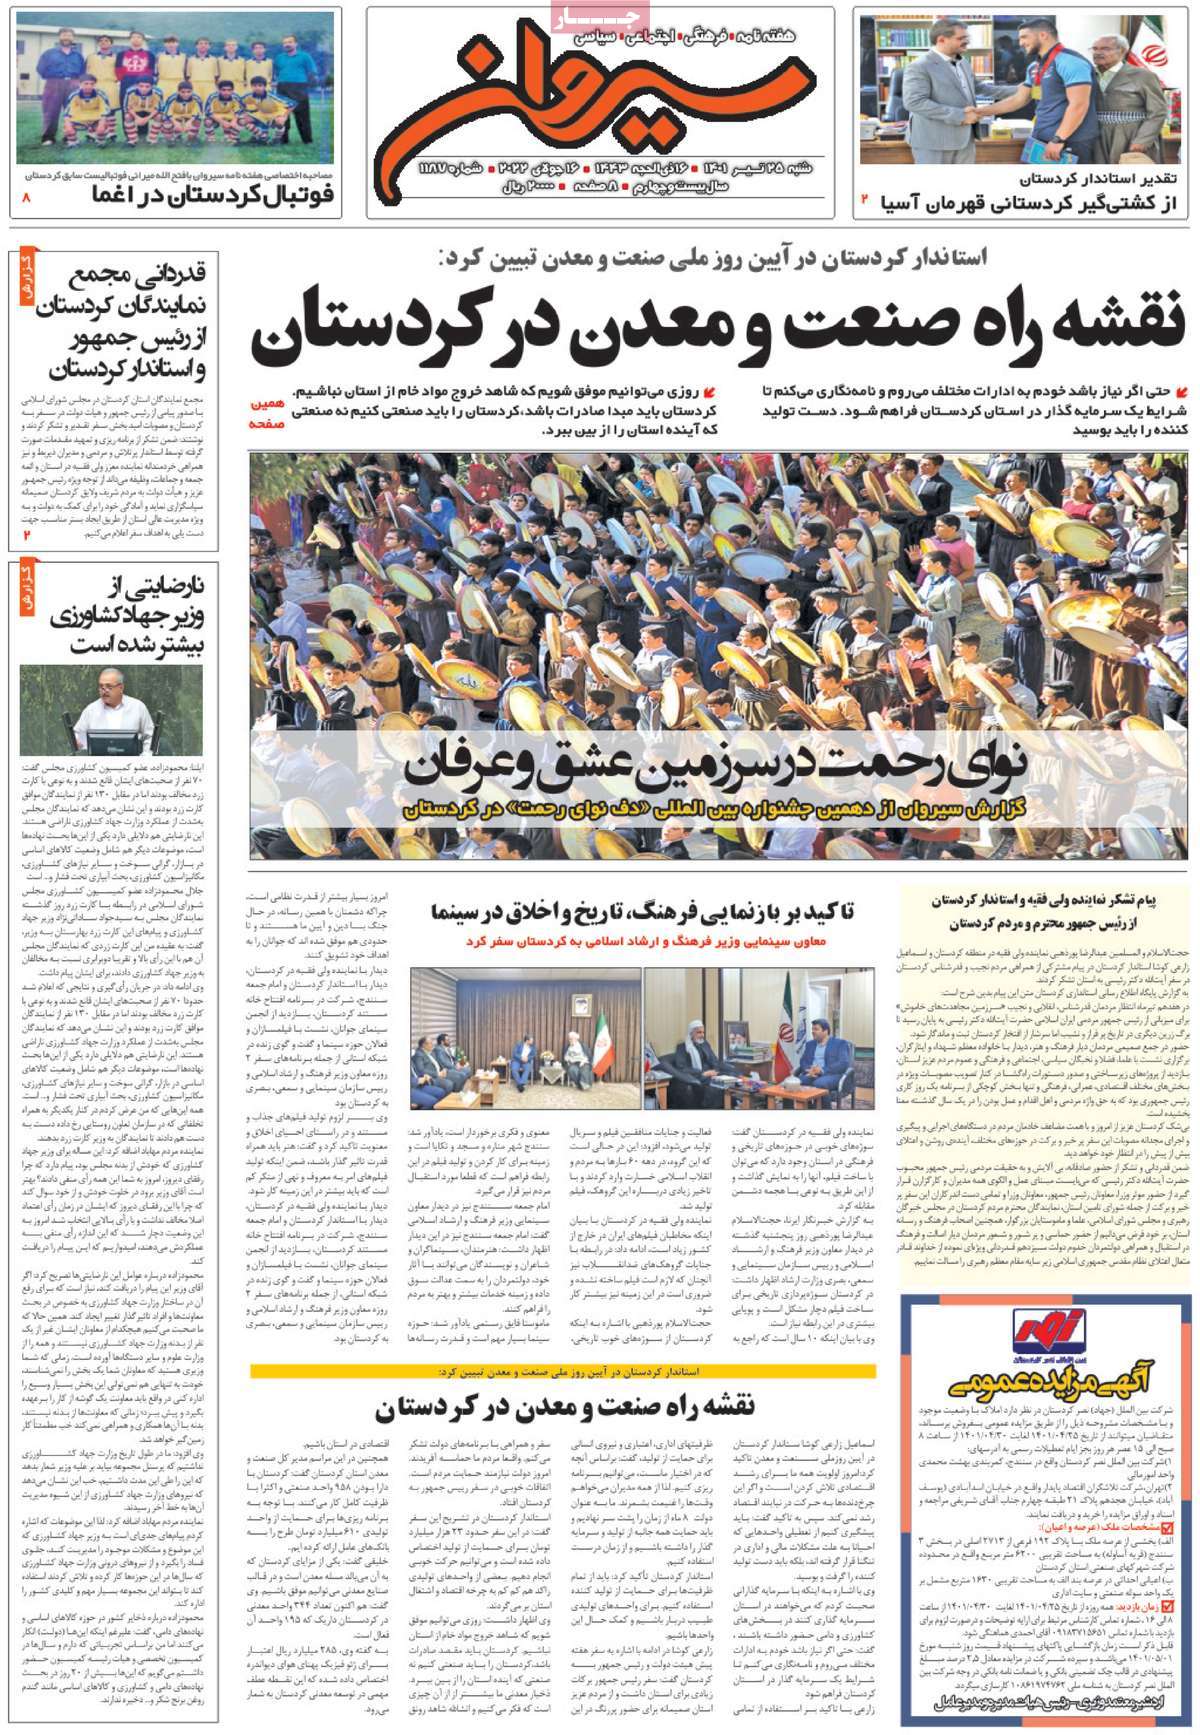 صفحه نخست مجله سیروان - شنبه, ۲۵ تیر ۱۴۰۱